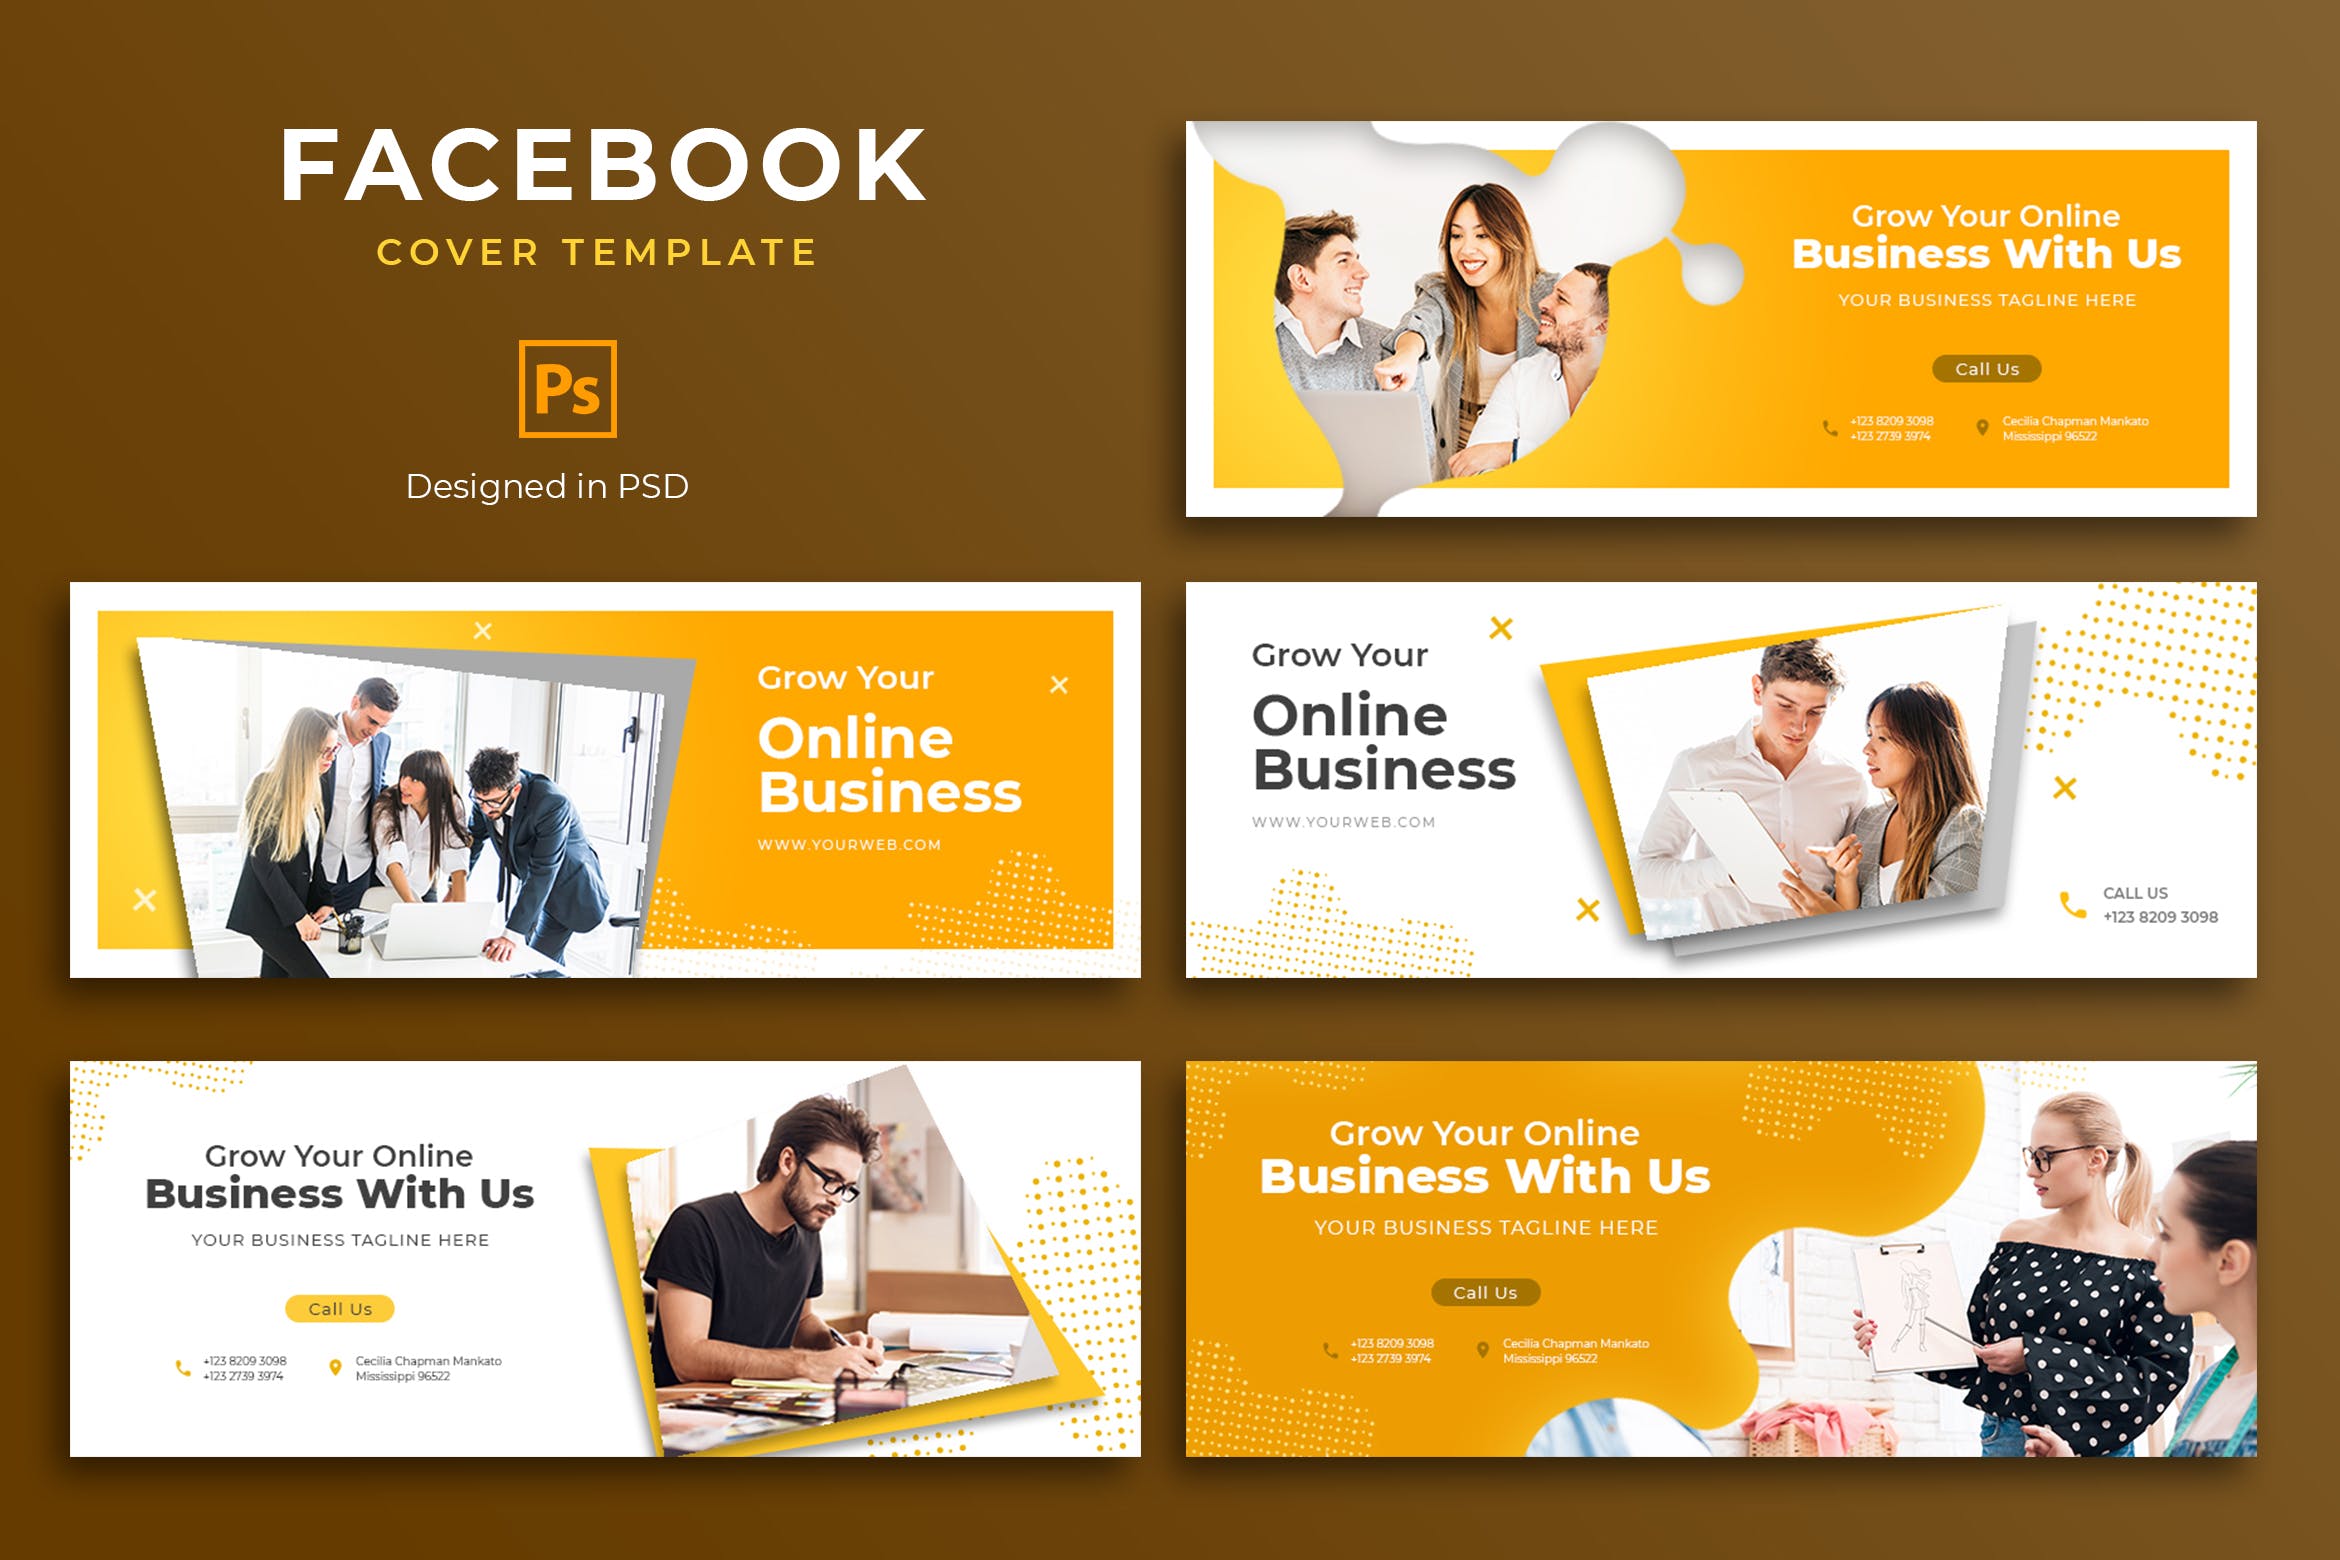 商业推广Facebook主页封面设计模板第一素材精选 Business Facebook Cover Template插图